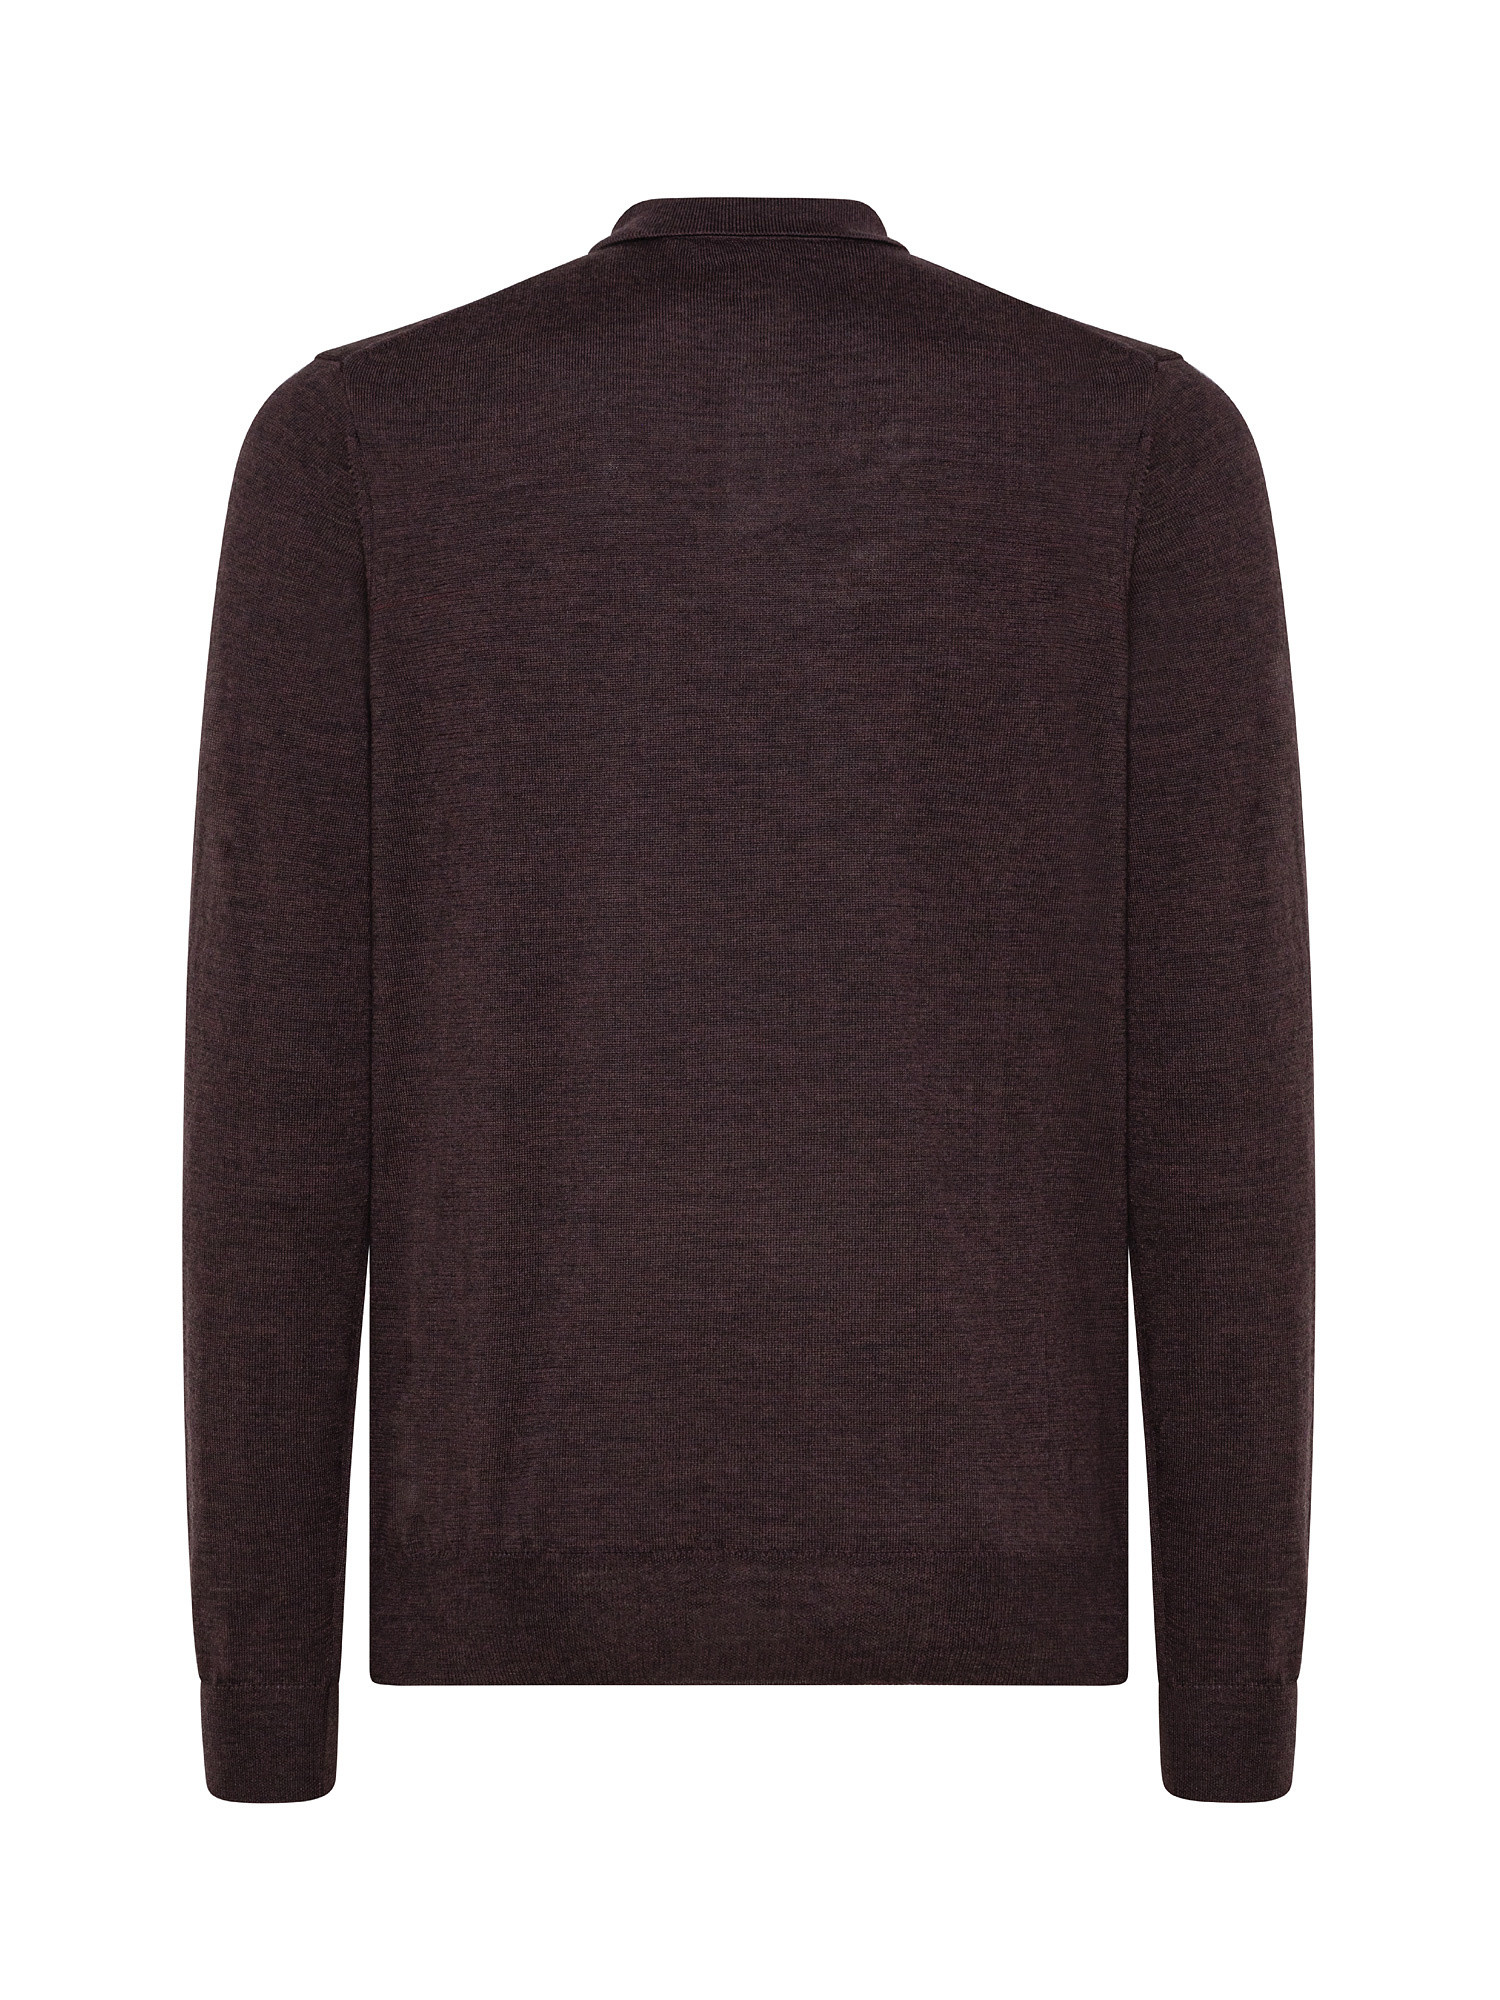 Merino wool polo shirt, Brown, large image number 1